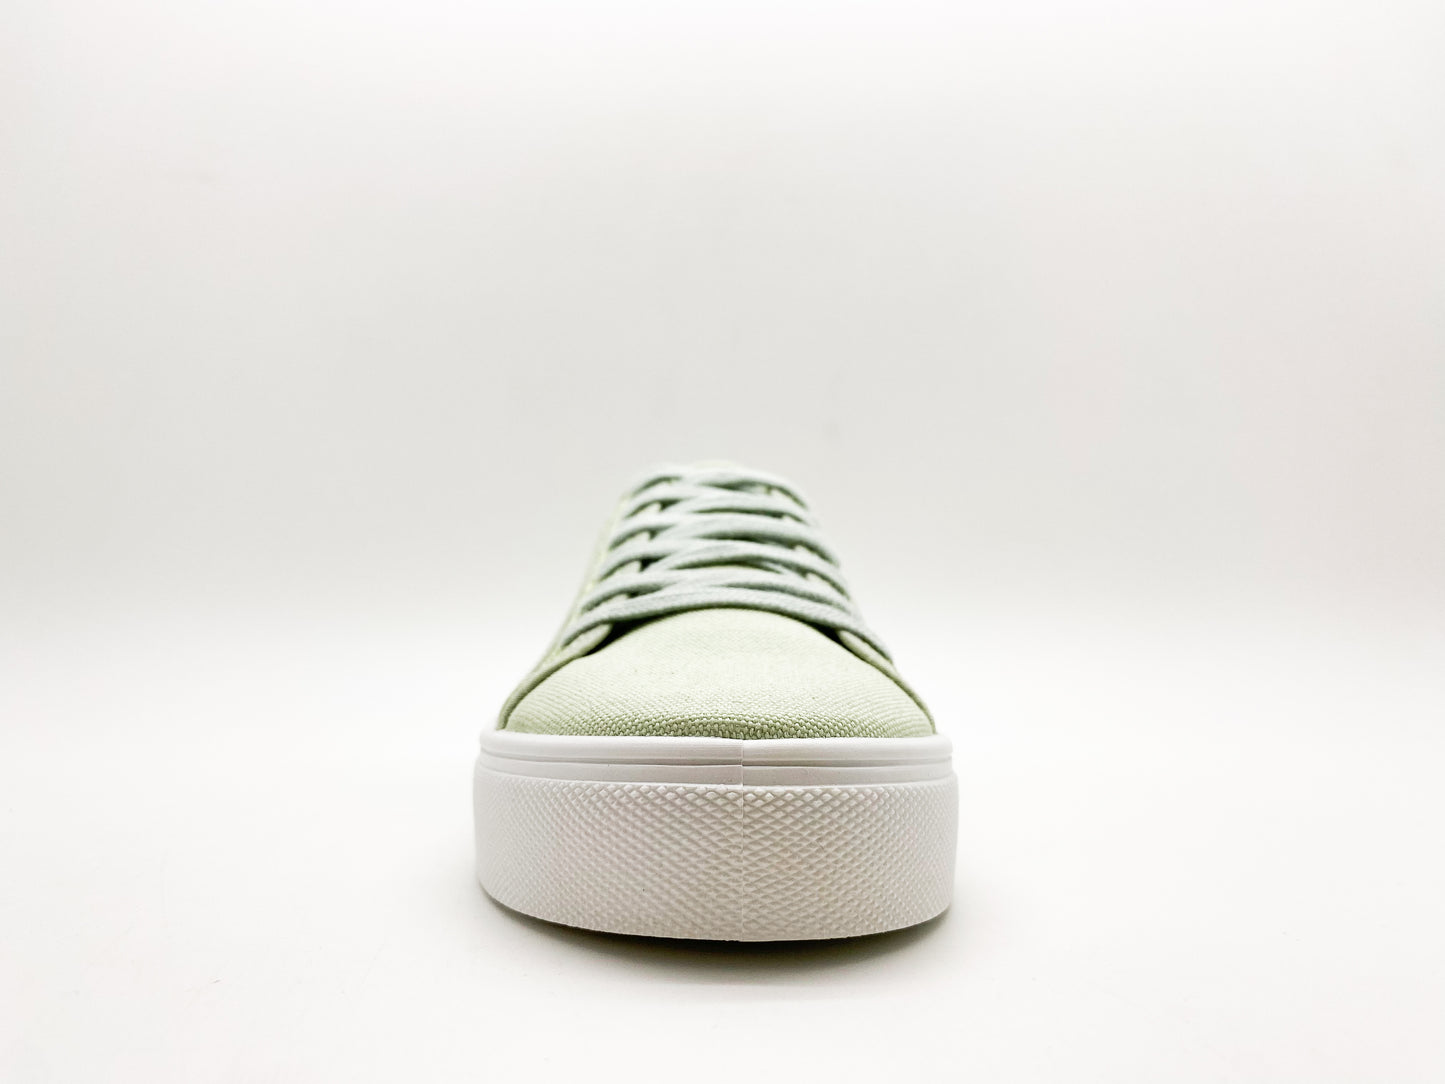 thies ® Natural Dye Plain Sneaker vegan light green (W/X)